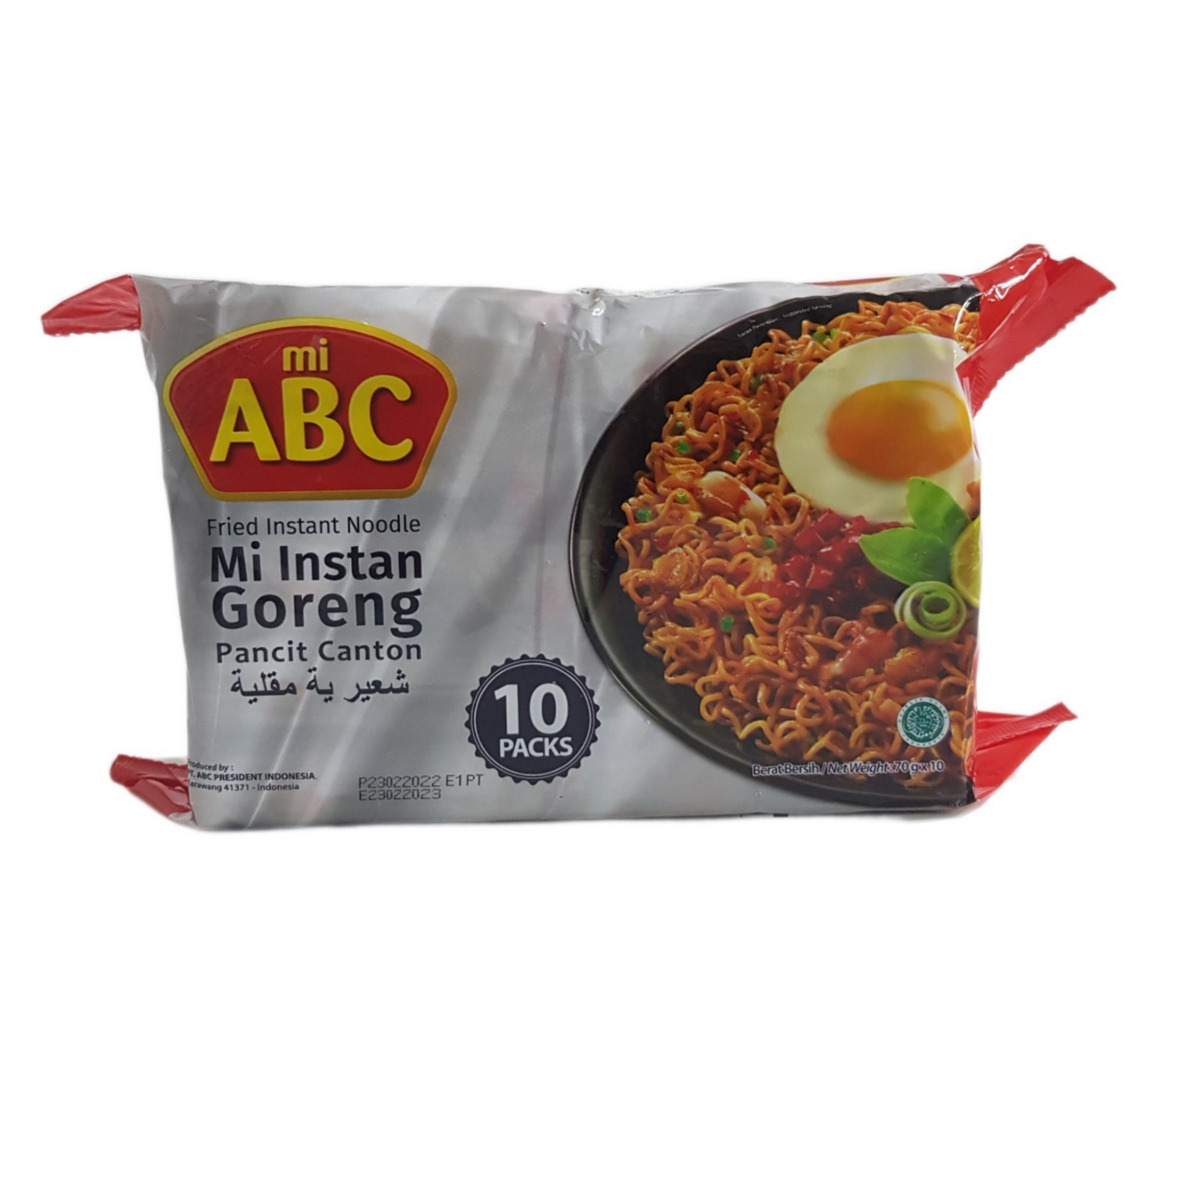 ABC Mi Instant Goreng Pancit Canton Instant Noodle 10 IN 1 (Cargo)